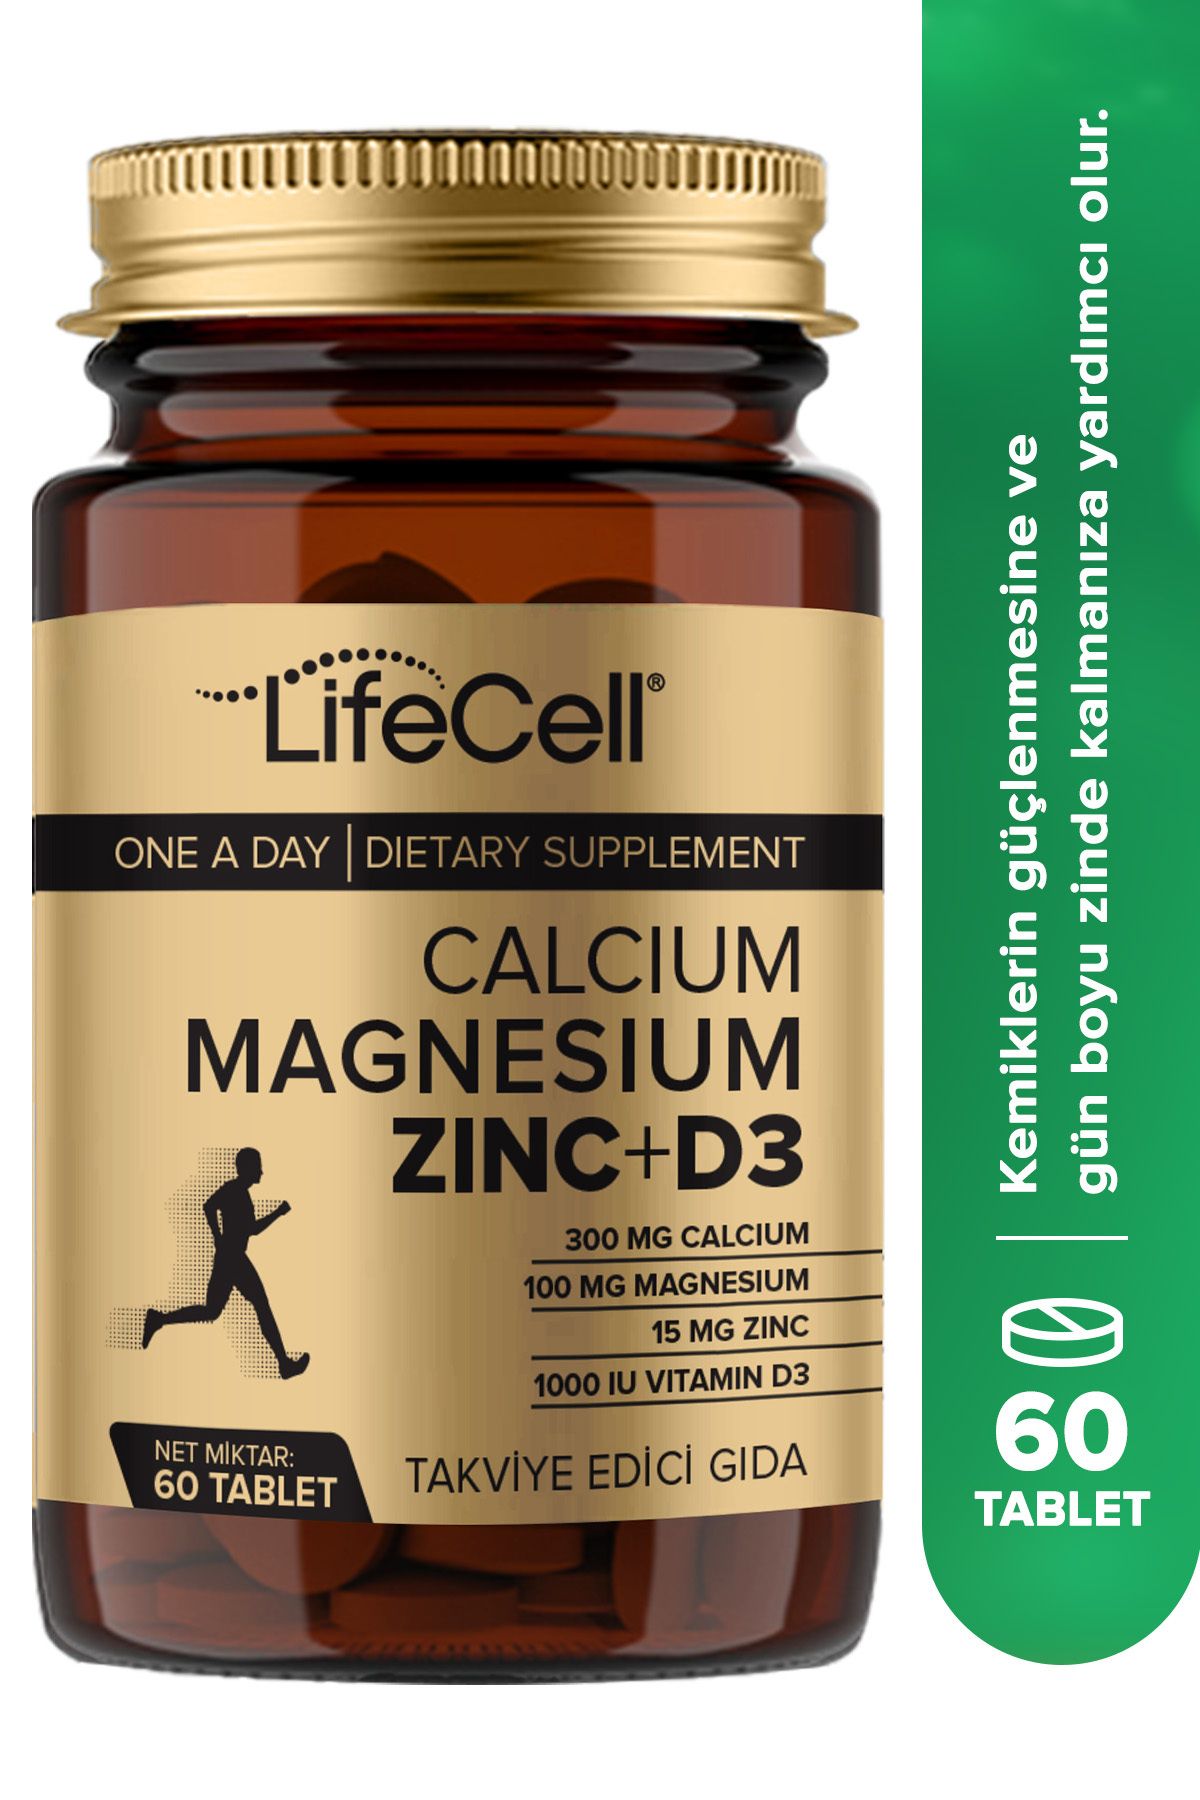 Lifecell Calcium - Magnesium - Zinc - D3 - (KALSİYUM MAGNEZYUM ÇİNKO VE VİTAMİN D3) Takviye Edici Gıda